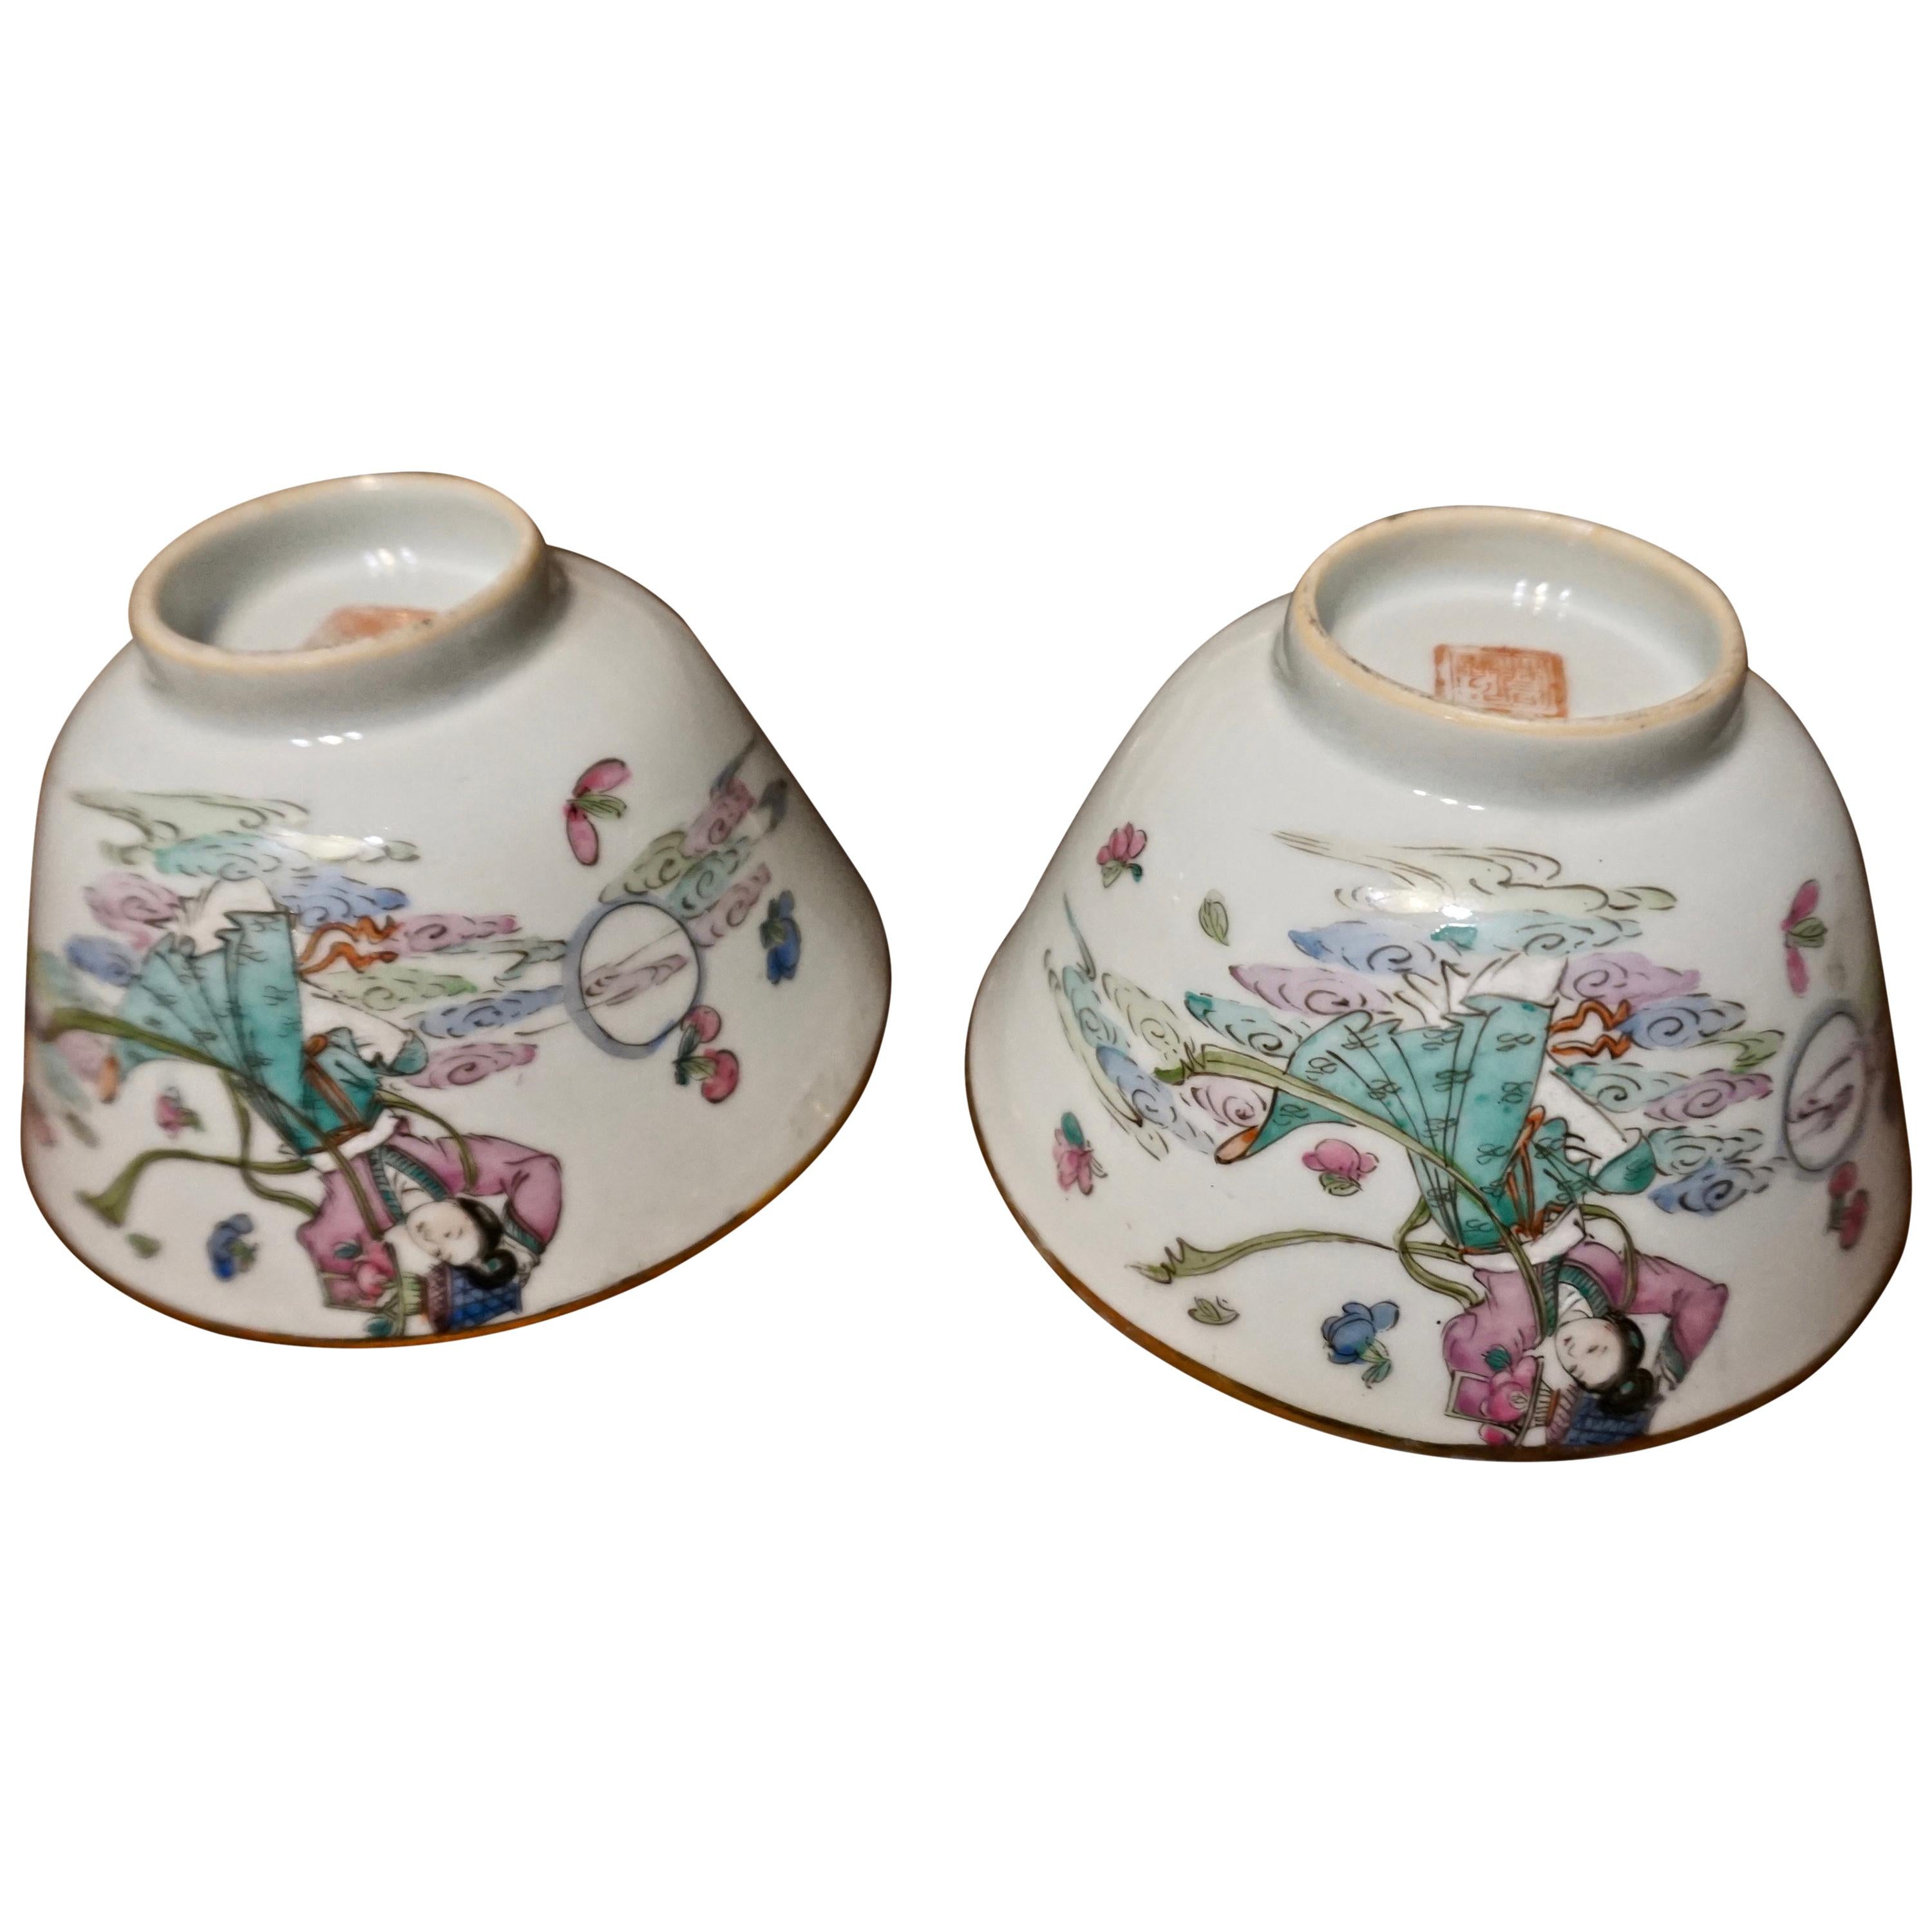 Chinesische handbemalte Keramikschalen aus den 1920er Jahren